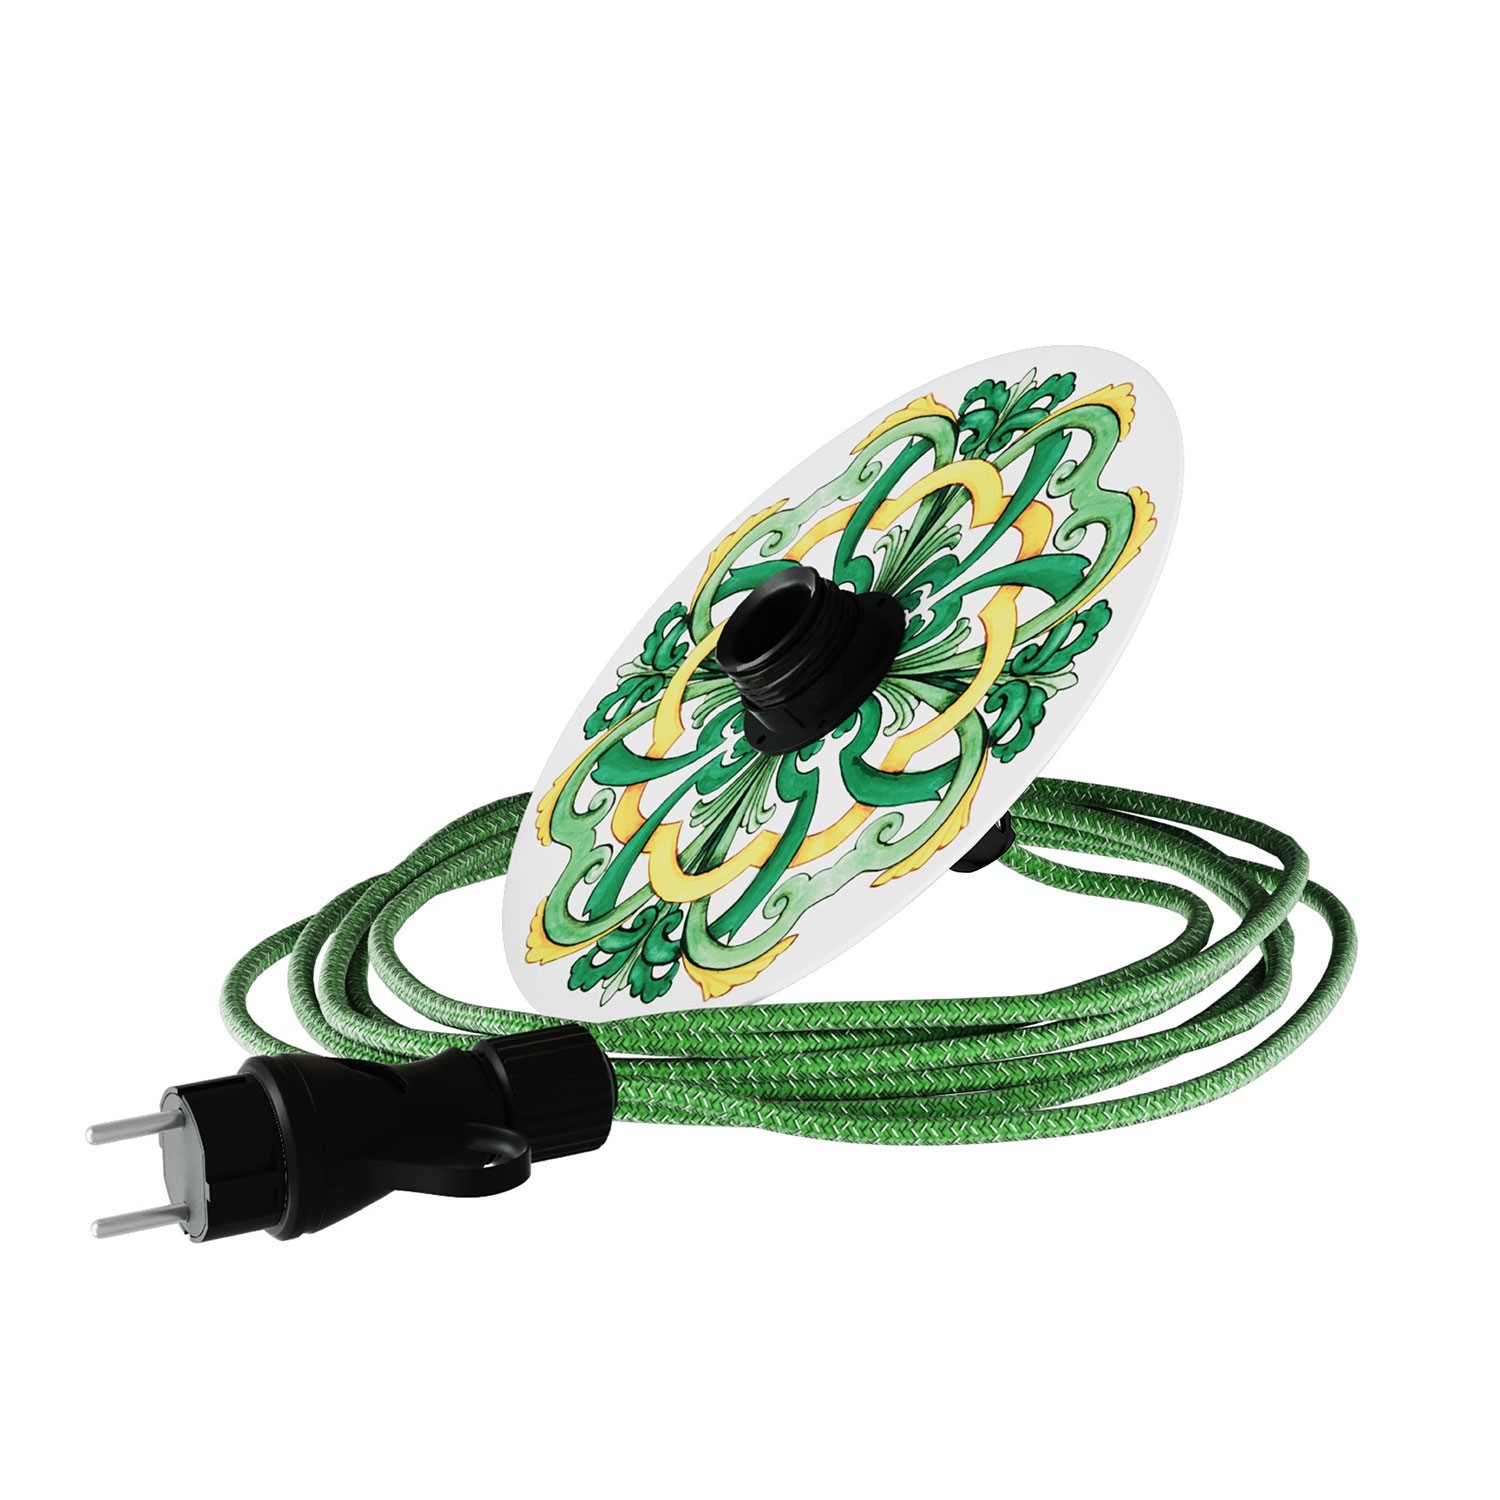 Eiva Snake med Ellepì "Maioliche" mini lampskärm, bärbar utomhuslampa, med IP65 lamphållare och stickpropp